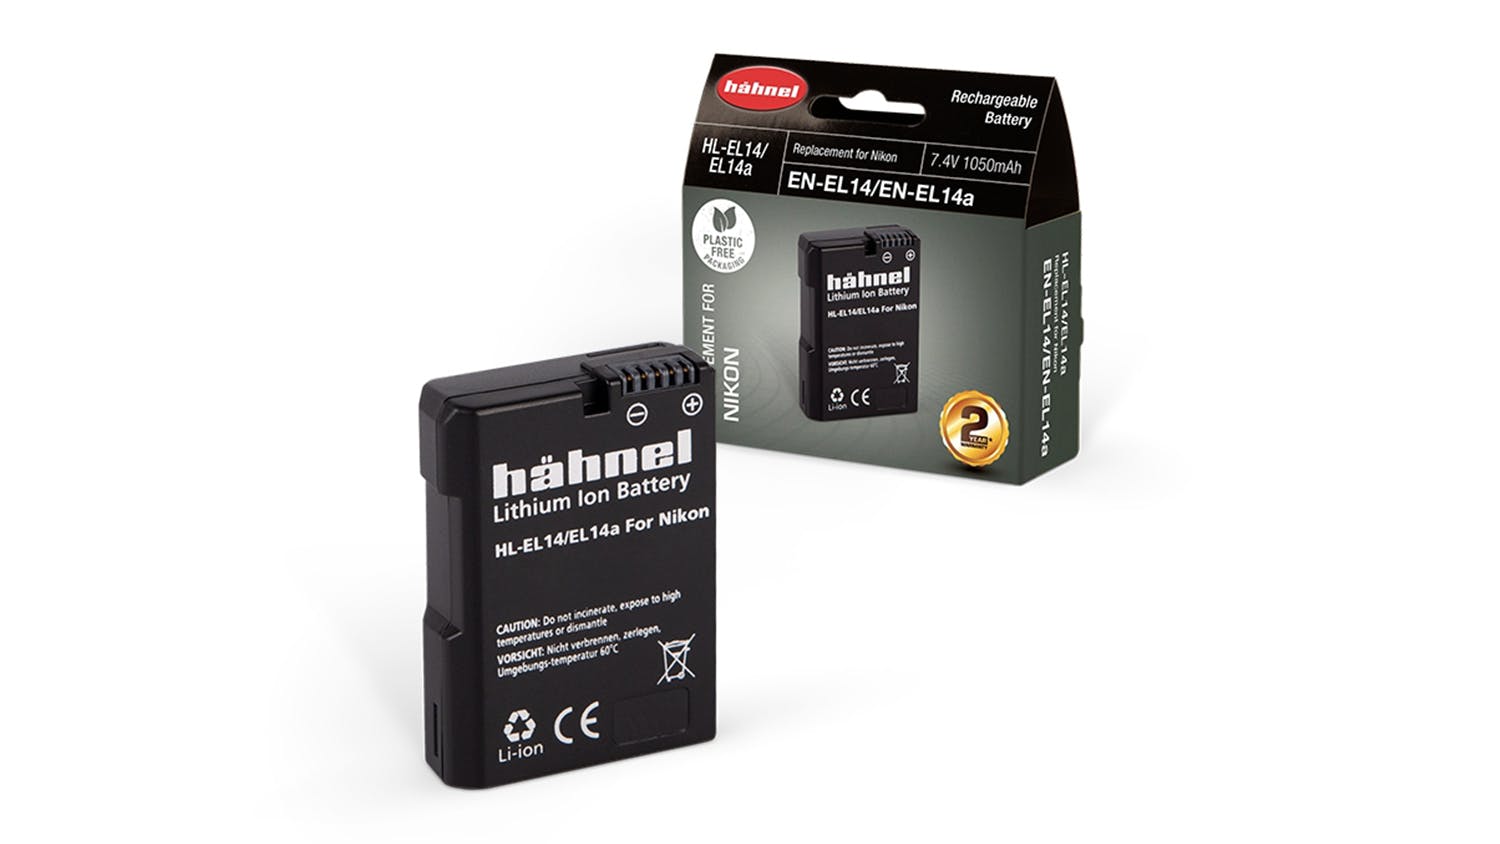 Hahnel HL-EL14 Replacement Battery for Nikon EN-EL14